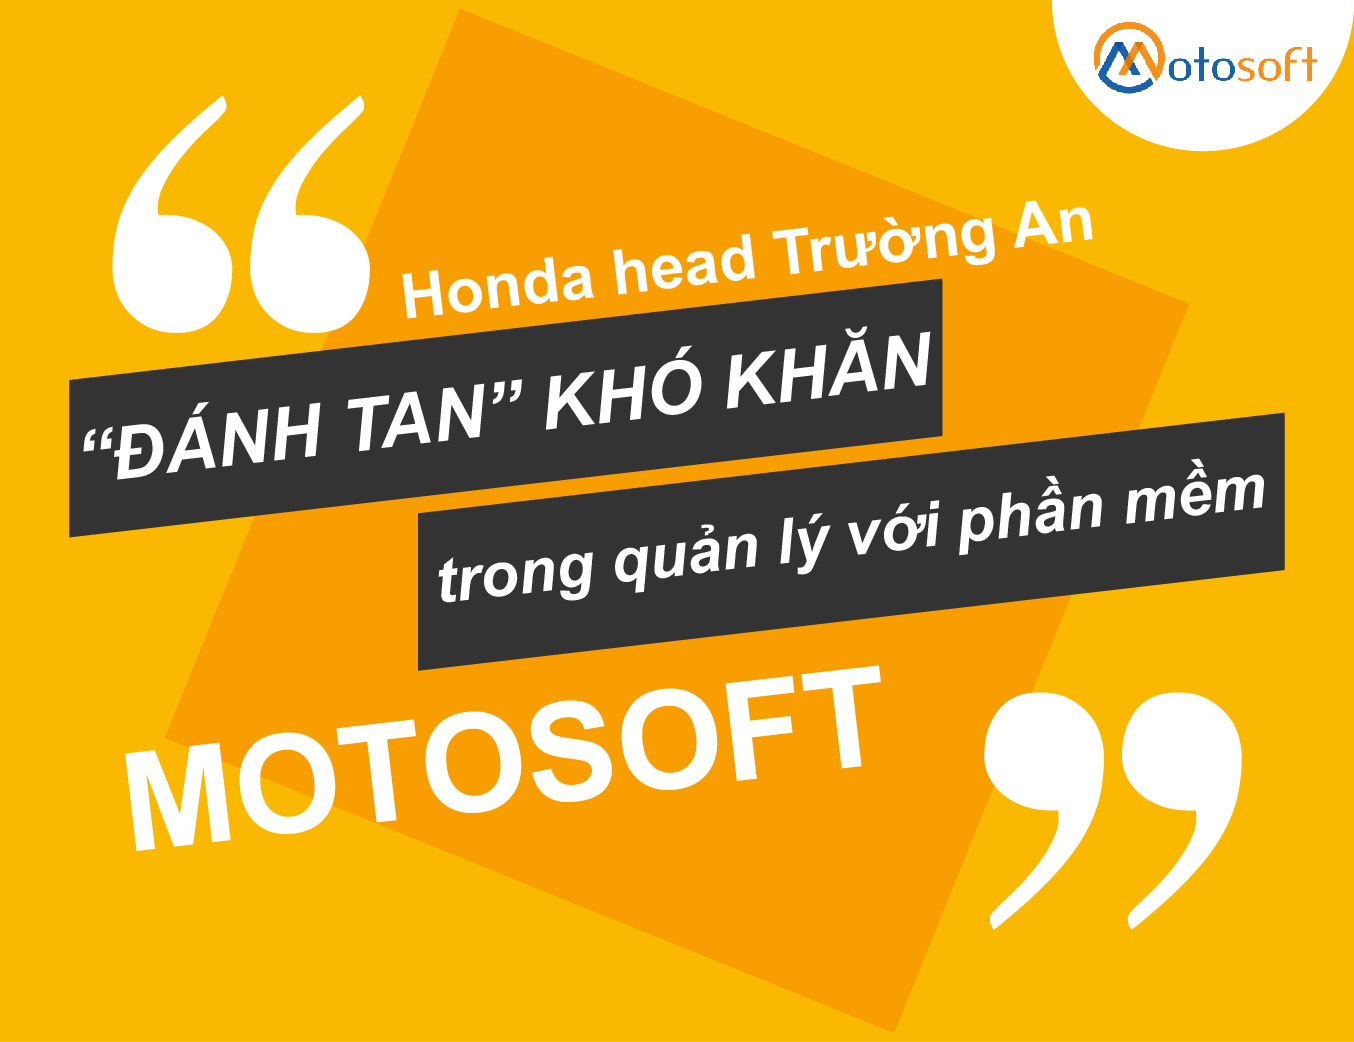 Hệ thống Honda Head Trường An giải quyết nỗi lo quản lý bằng phần mềm Motosoft